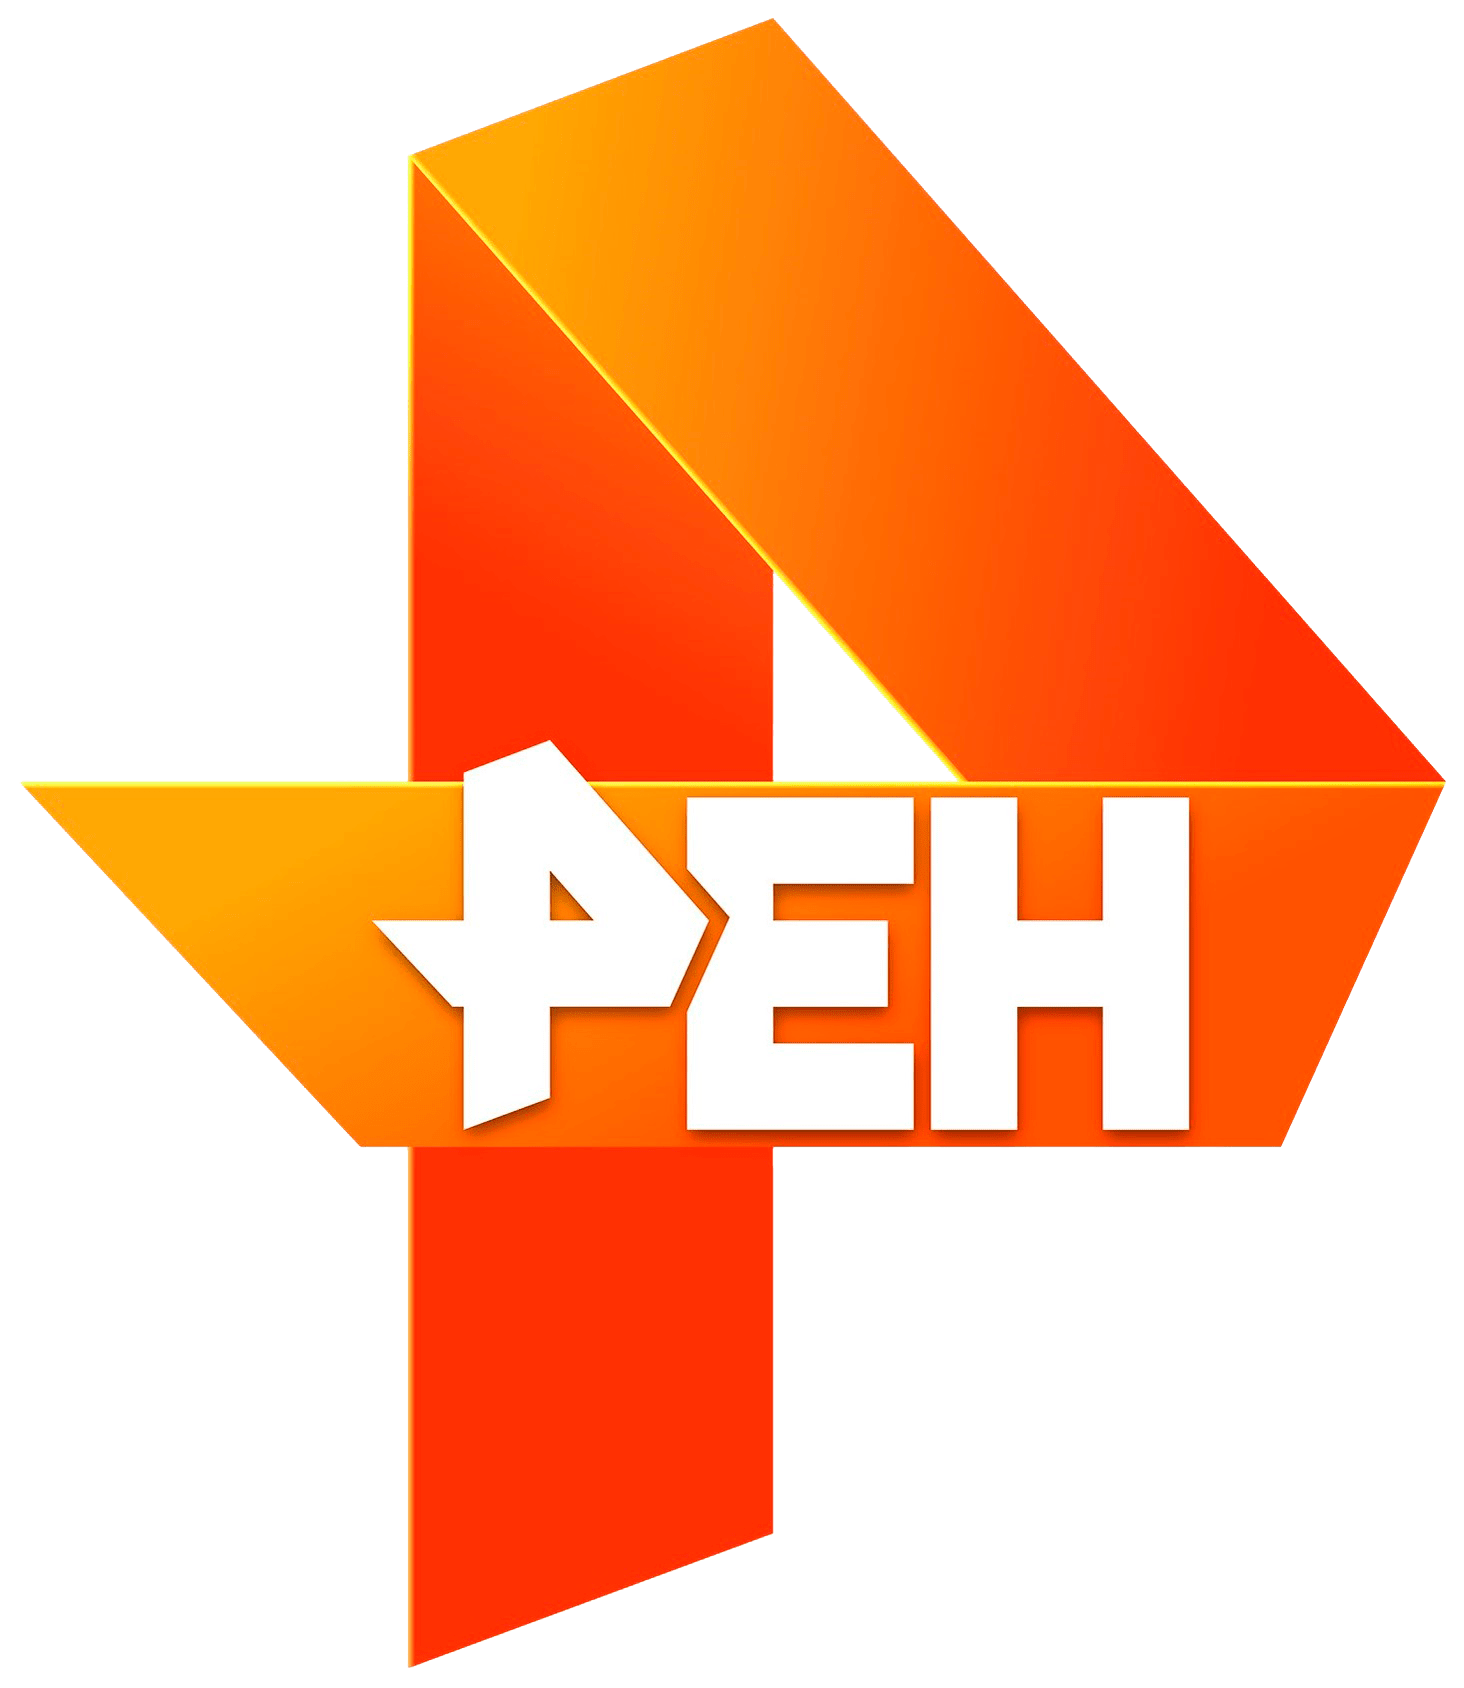 Раземщение рекламы РЕН ТВ, г. Ставрополь